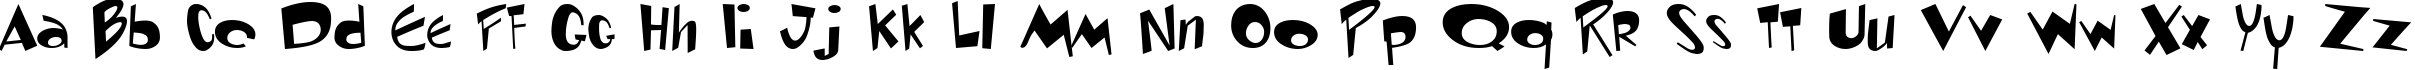 Пример написания английского алфавита шрифтом Ren & Stimpy